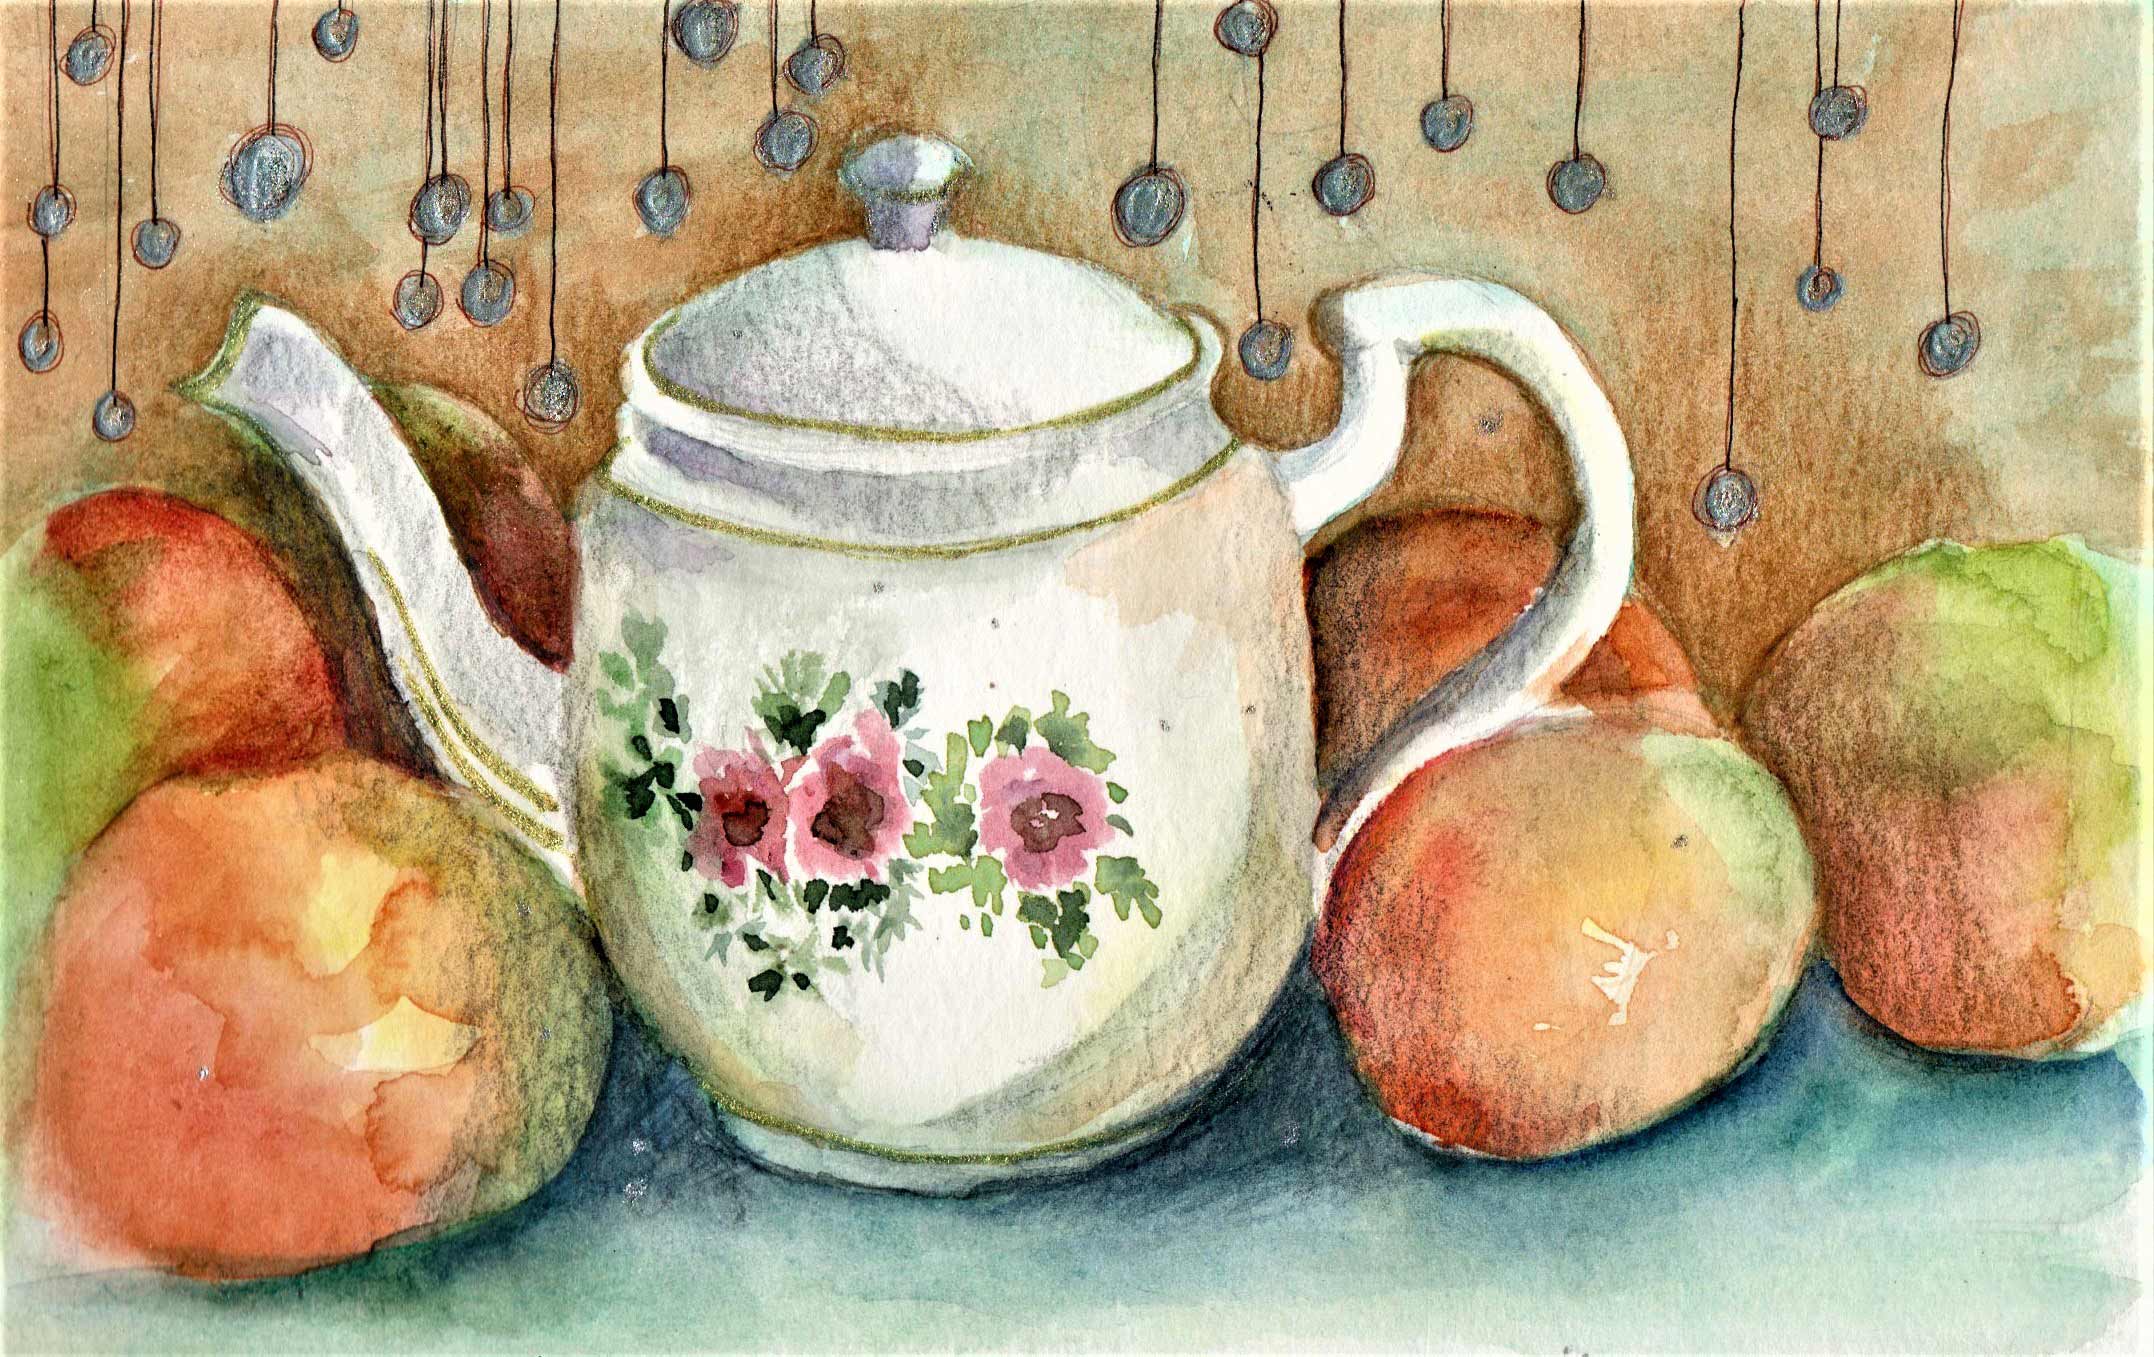 Tea Pot and Oranges